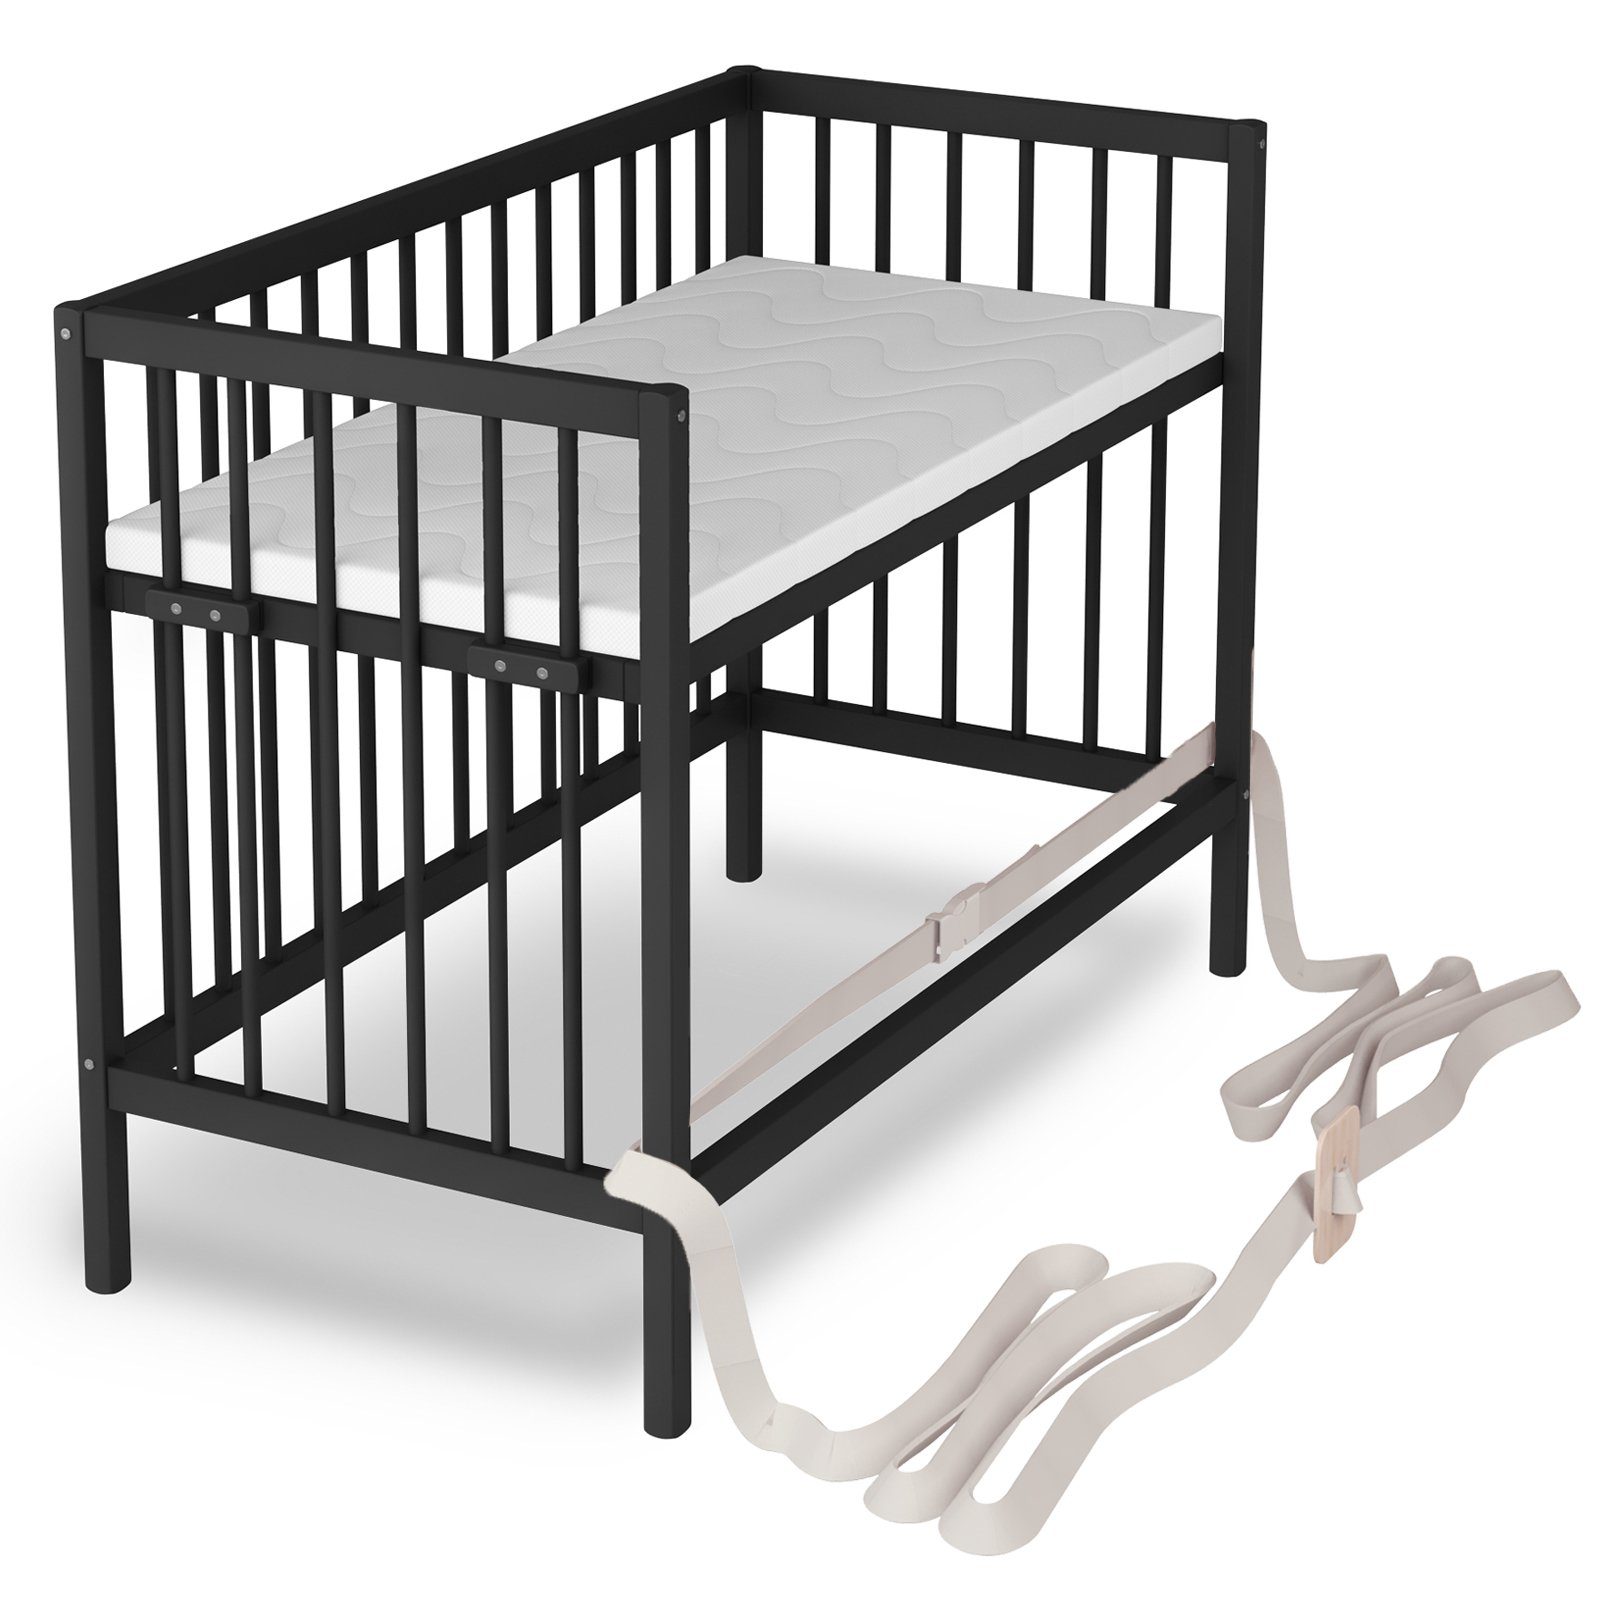 Sämann Beistellbett 60x120 cm - für Boxspringbetten & normale Betten, stufenlos  höhenverstellbar, umbaubar zum Babybett, mit Feststellgurt